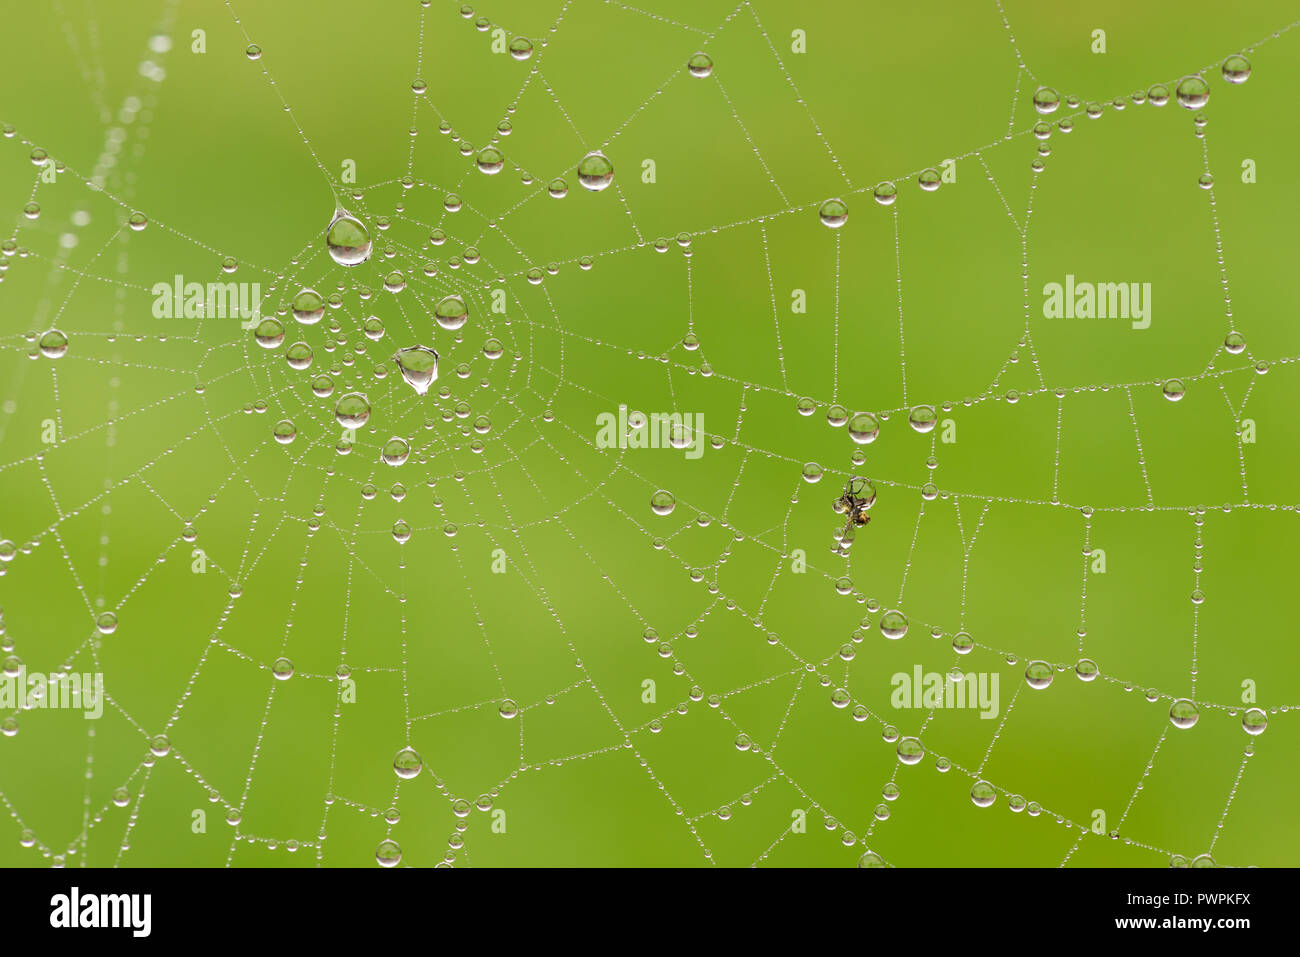 La bruine et le brouillard en automne une couche web spiders révélant le fils de soie chargés de gouttelettes gouttelettes de l'eau de pluie et capturé fly Banque D'Images